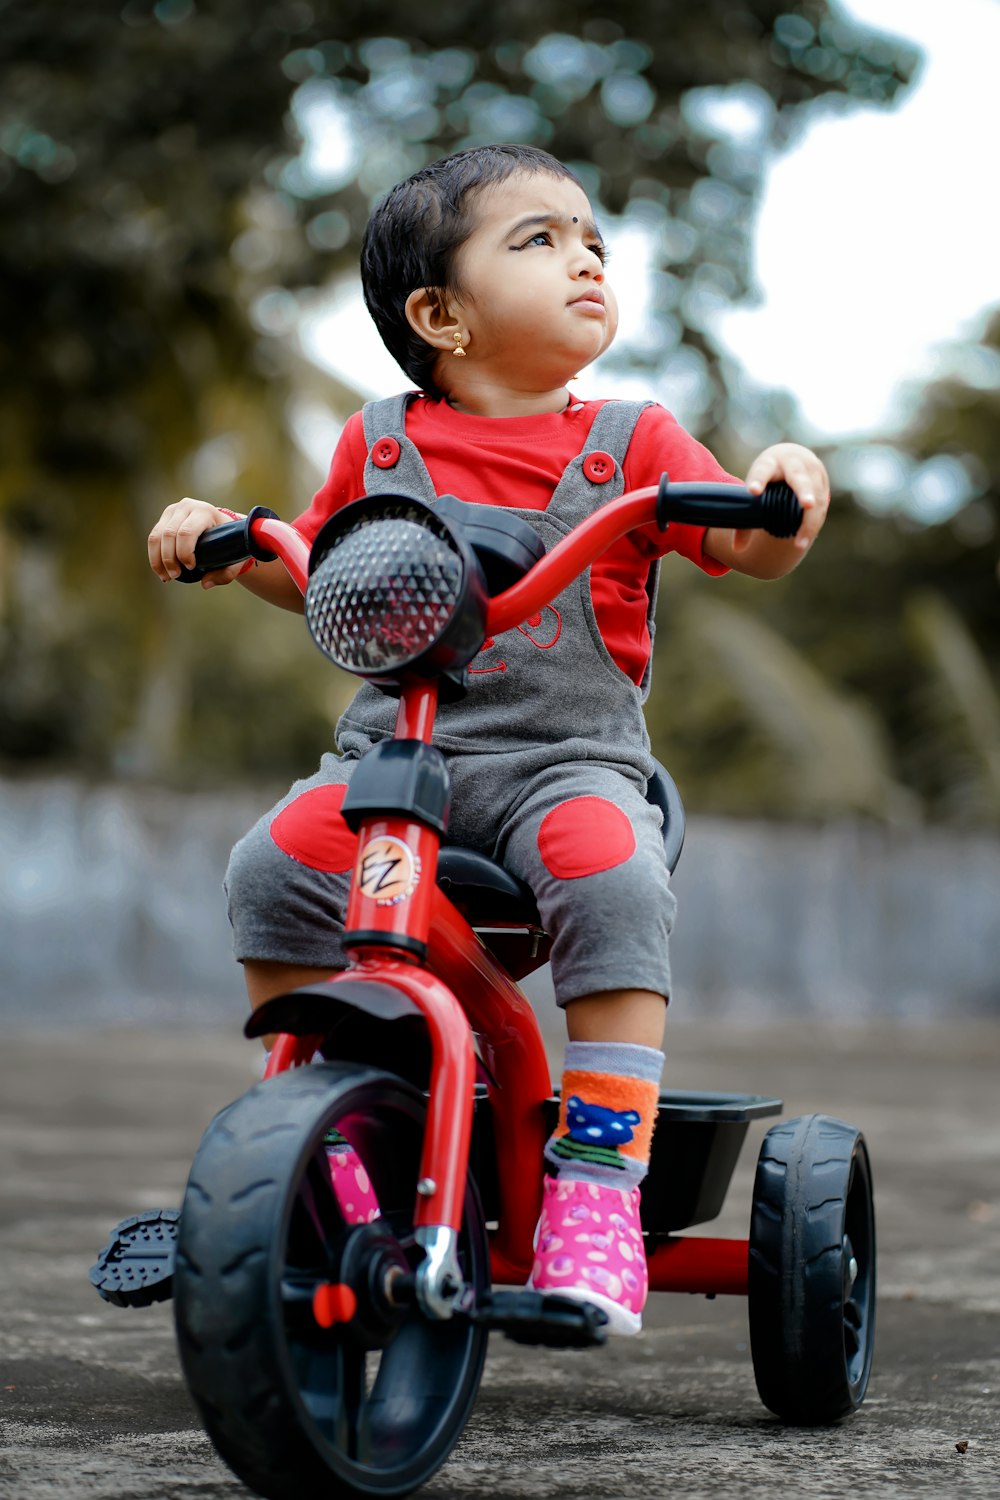 Niño con camisa roja montando motocicleta de juguete roja y negra